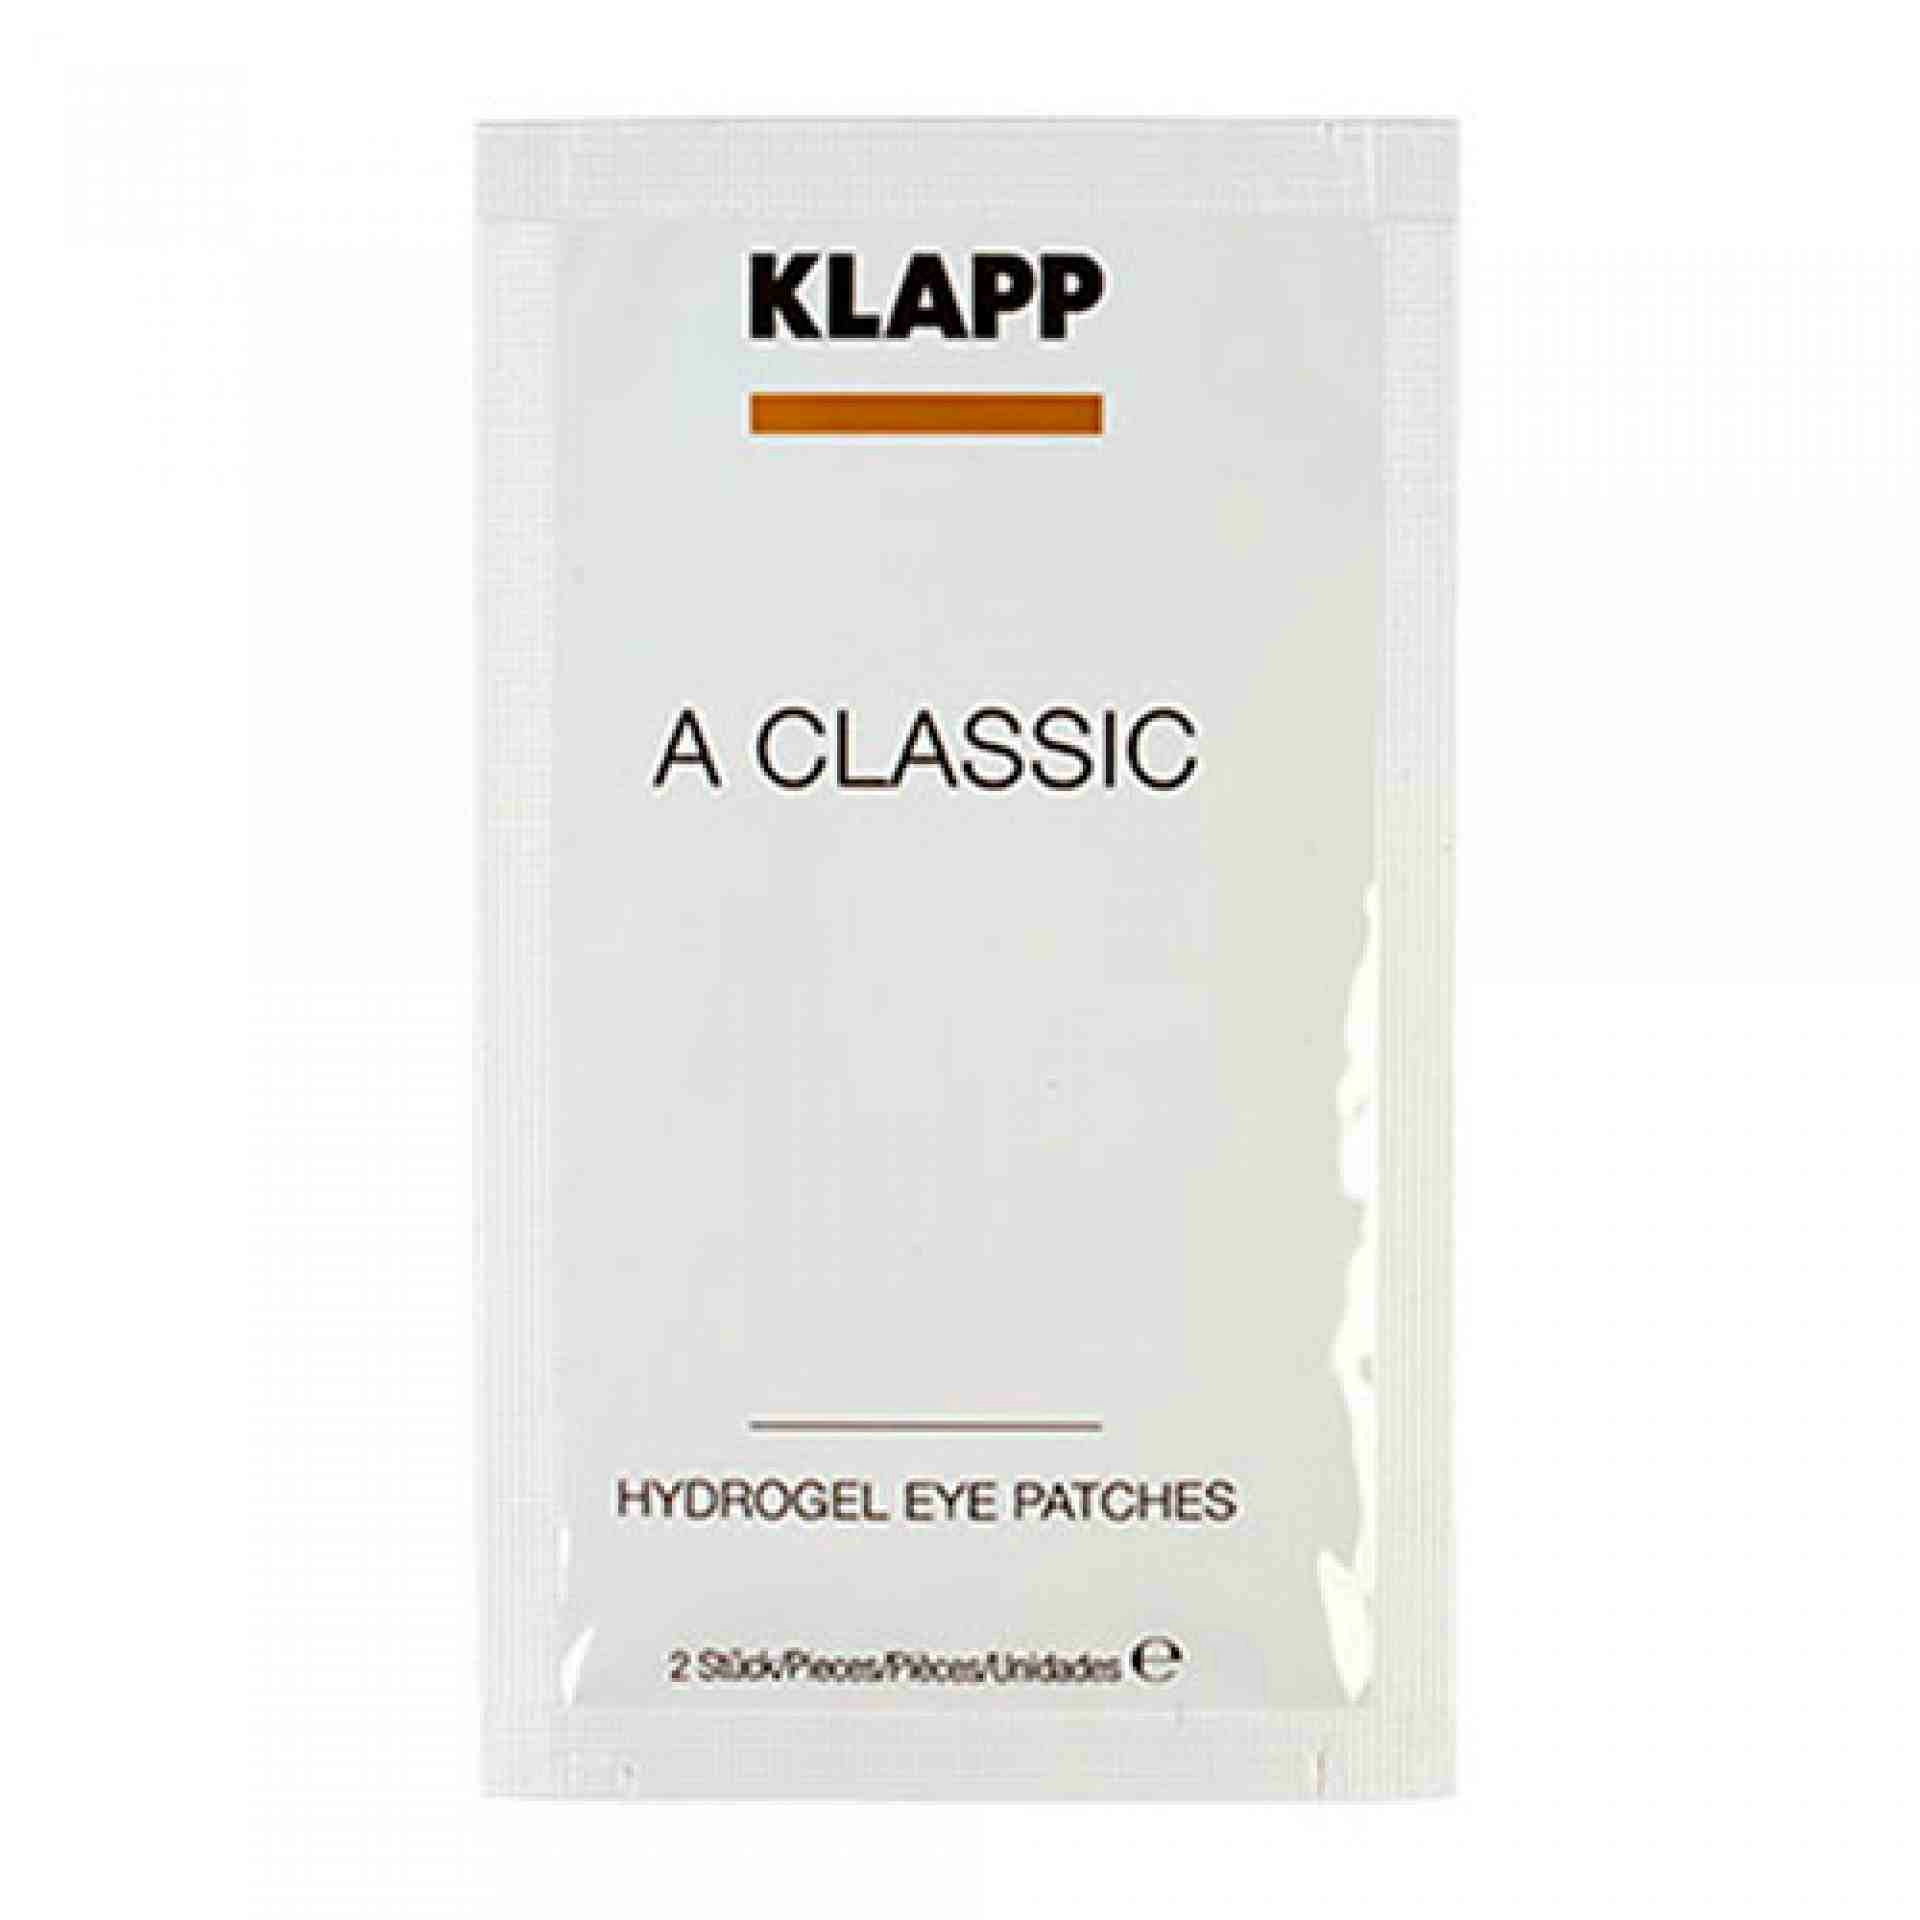 Hydrogel Eye Patches | Hidrogel para el Contorno de Ojos 1 unidad - A Classic - Klapp ®